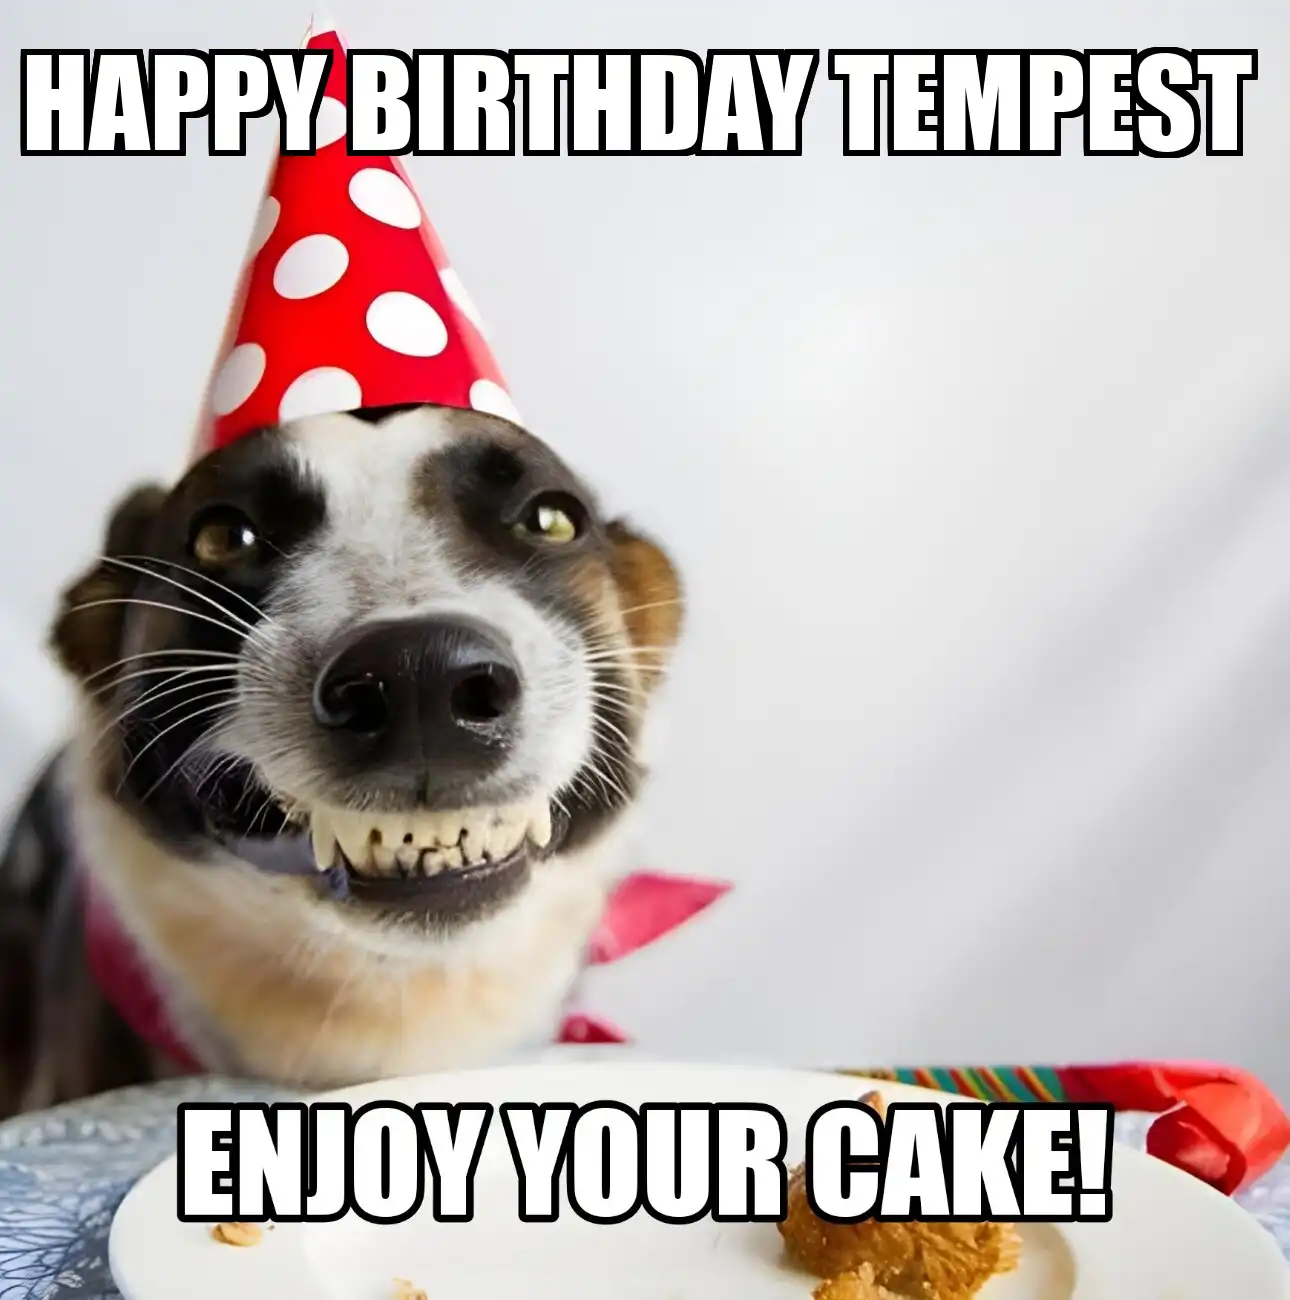 Happy Birthday Tempest Enjoy Your Cake Dog Meme